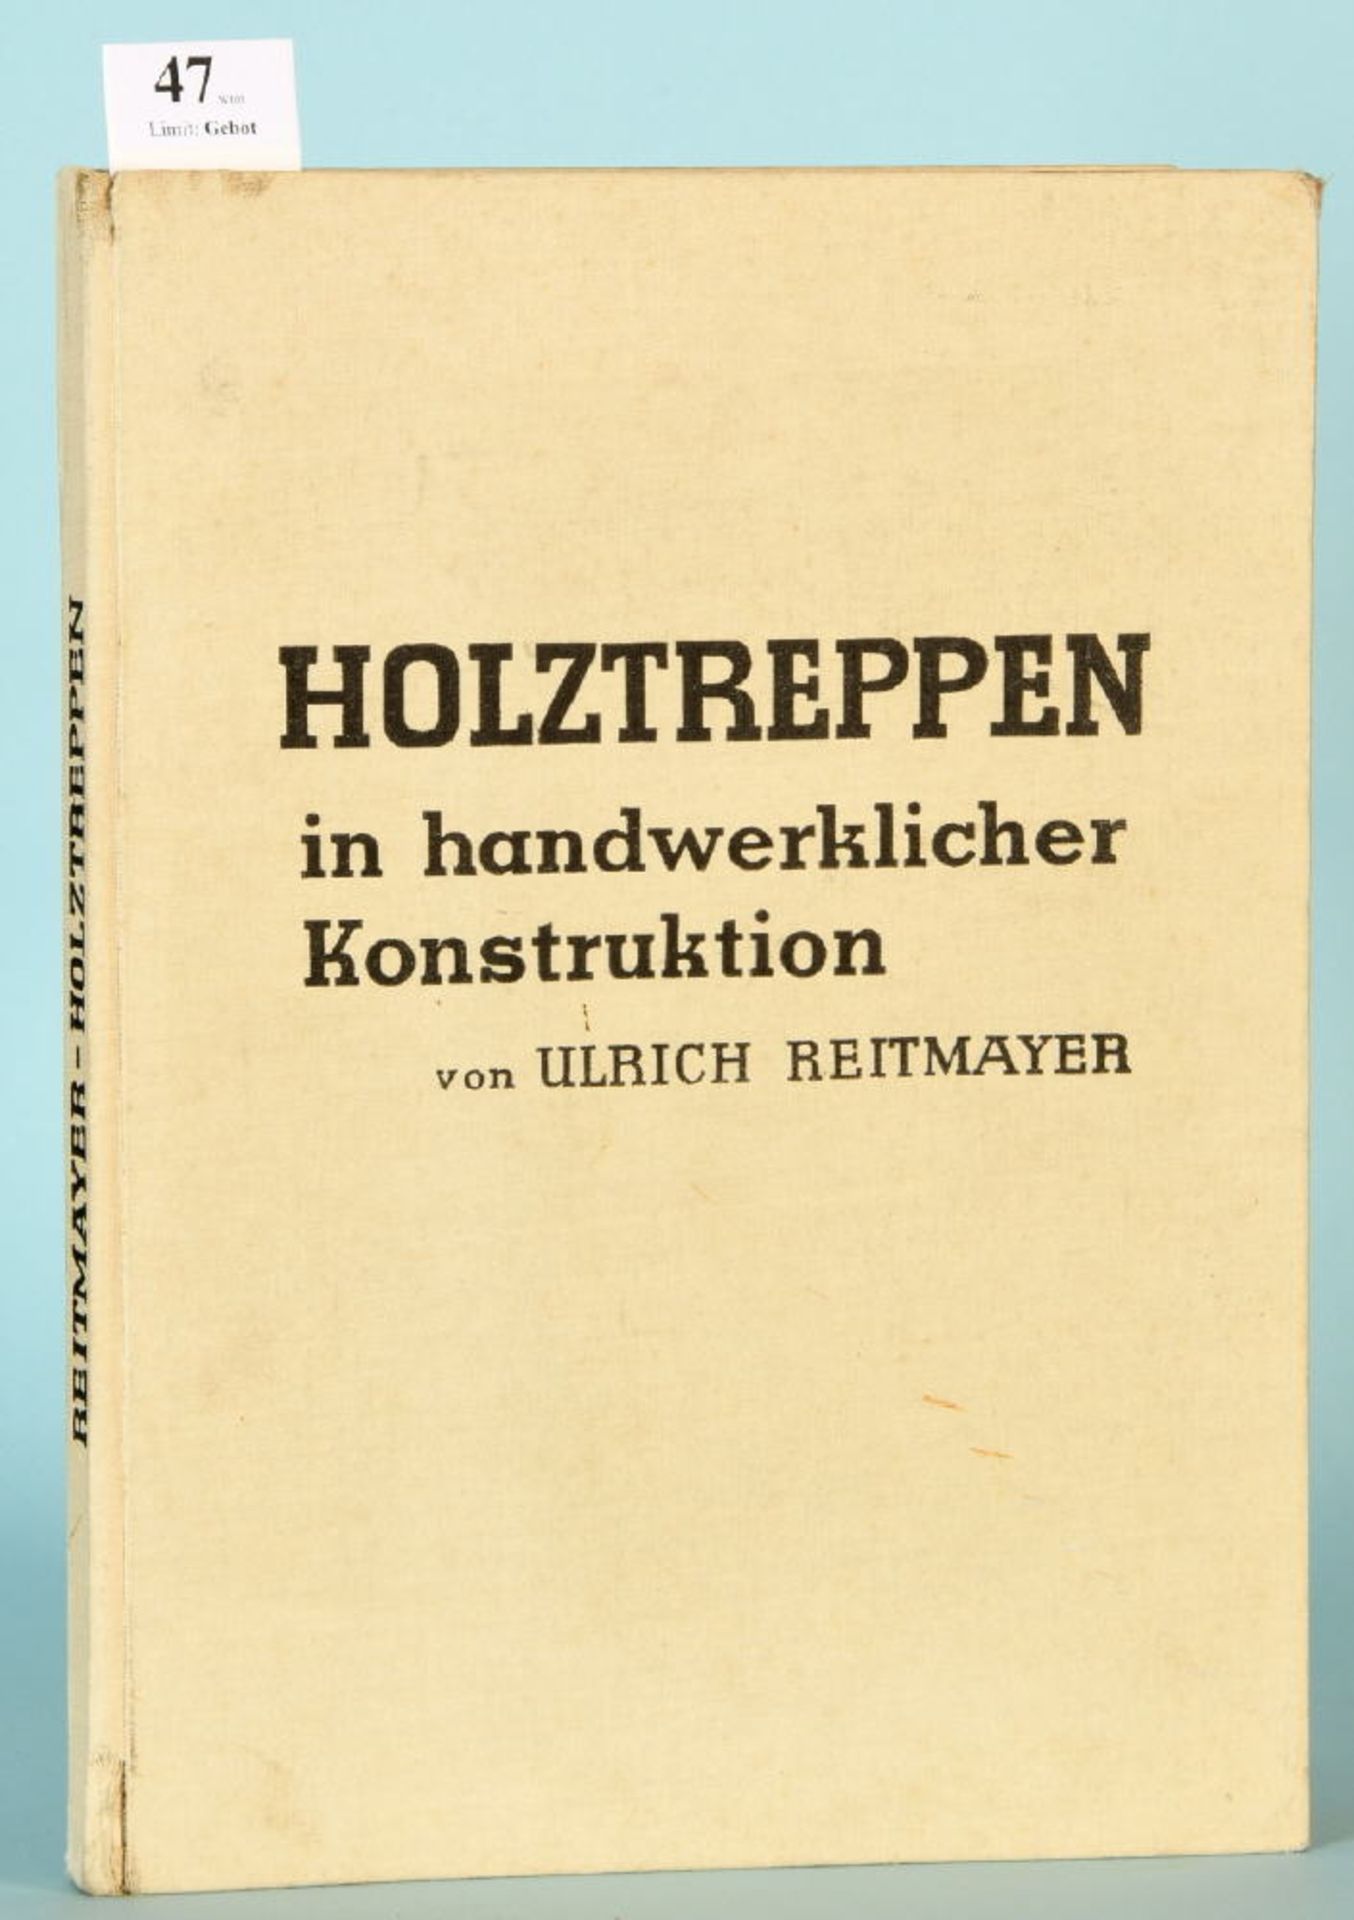 Reitmayer, Ulrich "Holztreppen in handwerklicher Konstruktion"